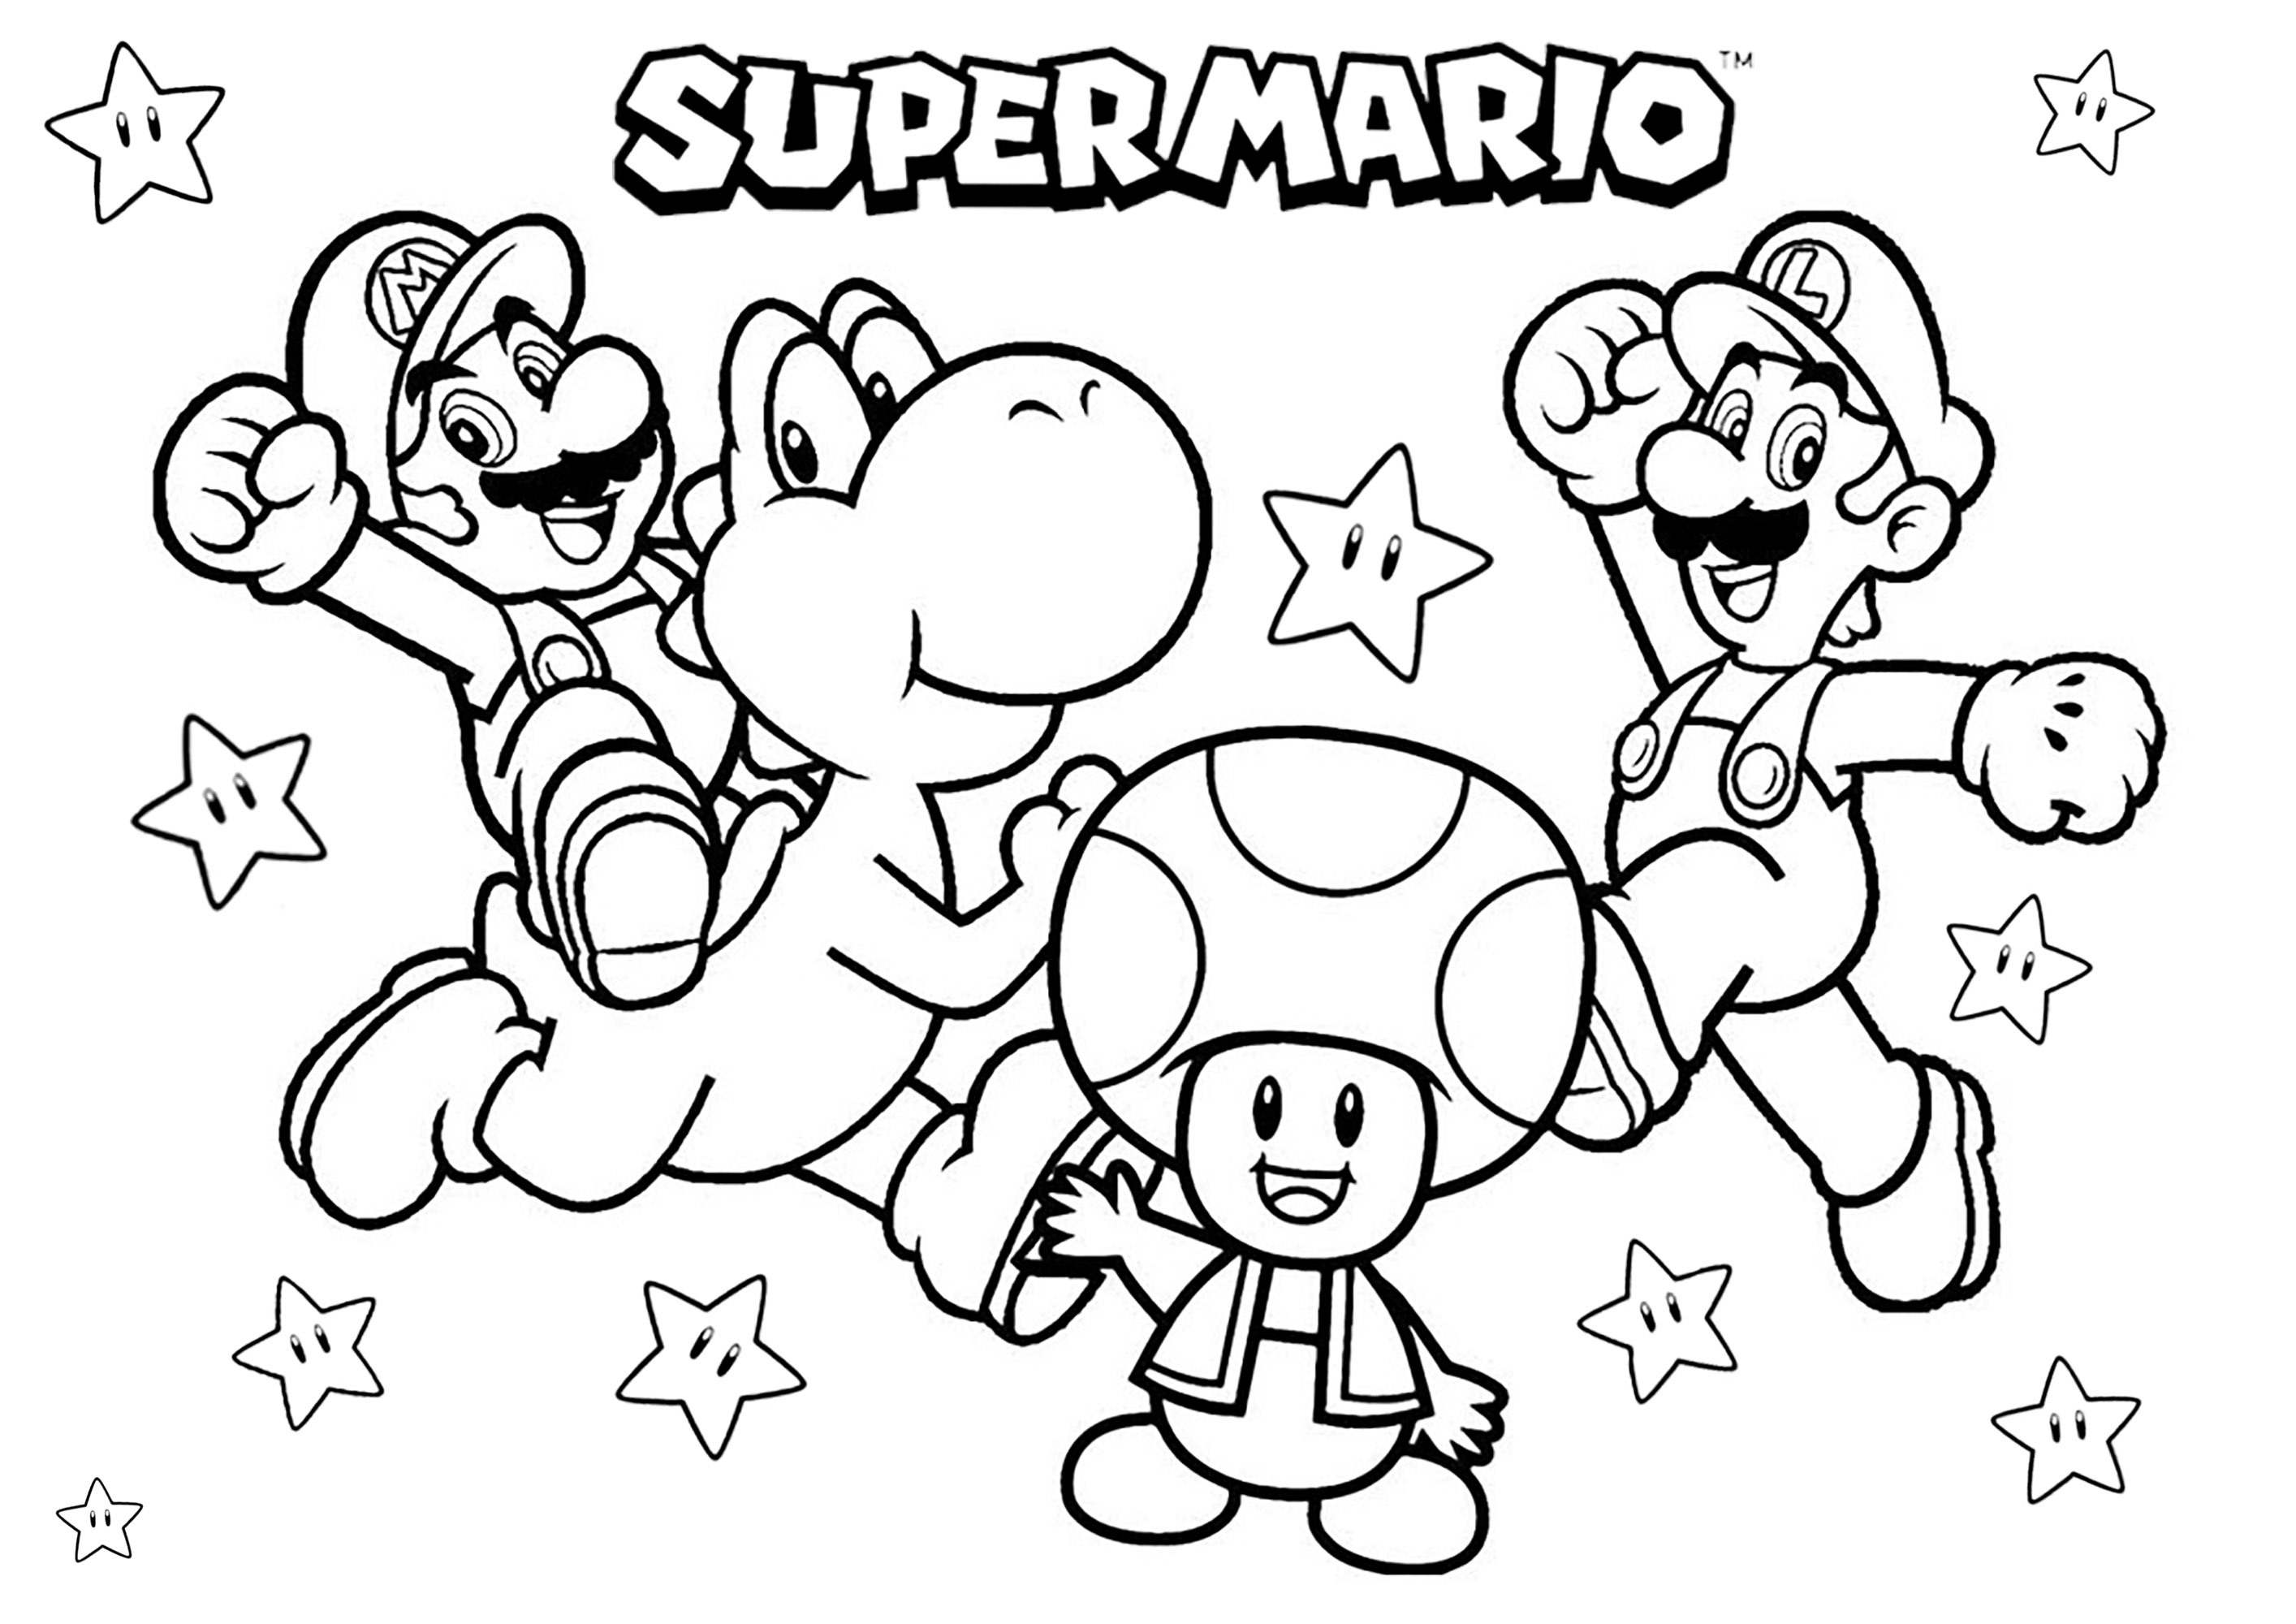 Mario, Luigi, Yoshi y Toad con muchas estrellas. Un libro para colorear con algunos de los personajes principales de Super Mario Bros: ¡Los hermanos Mario y Luigi, el dinosaurio Yoshi y la seta Toad!